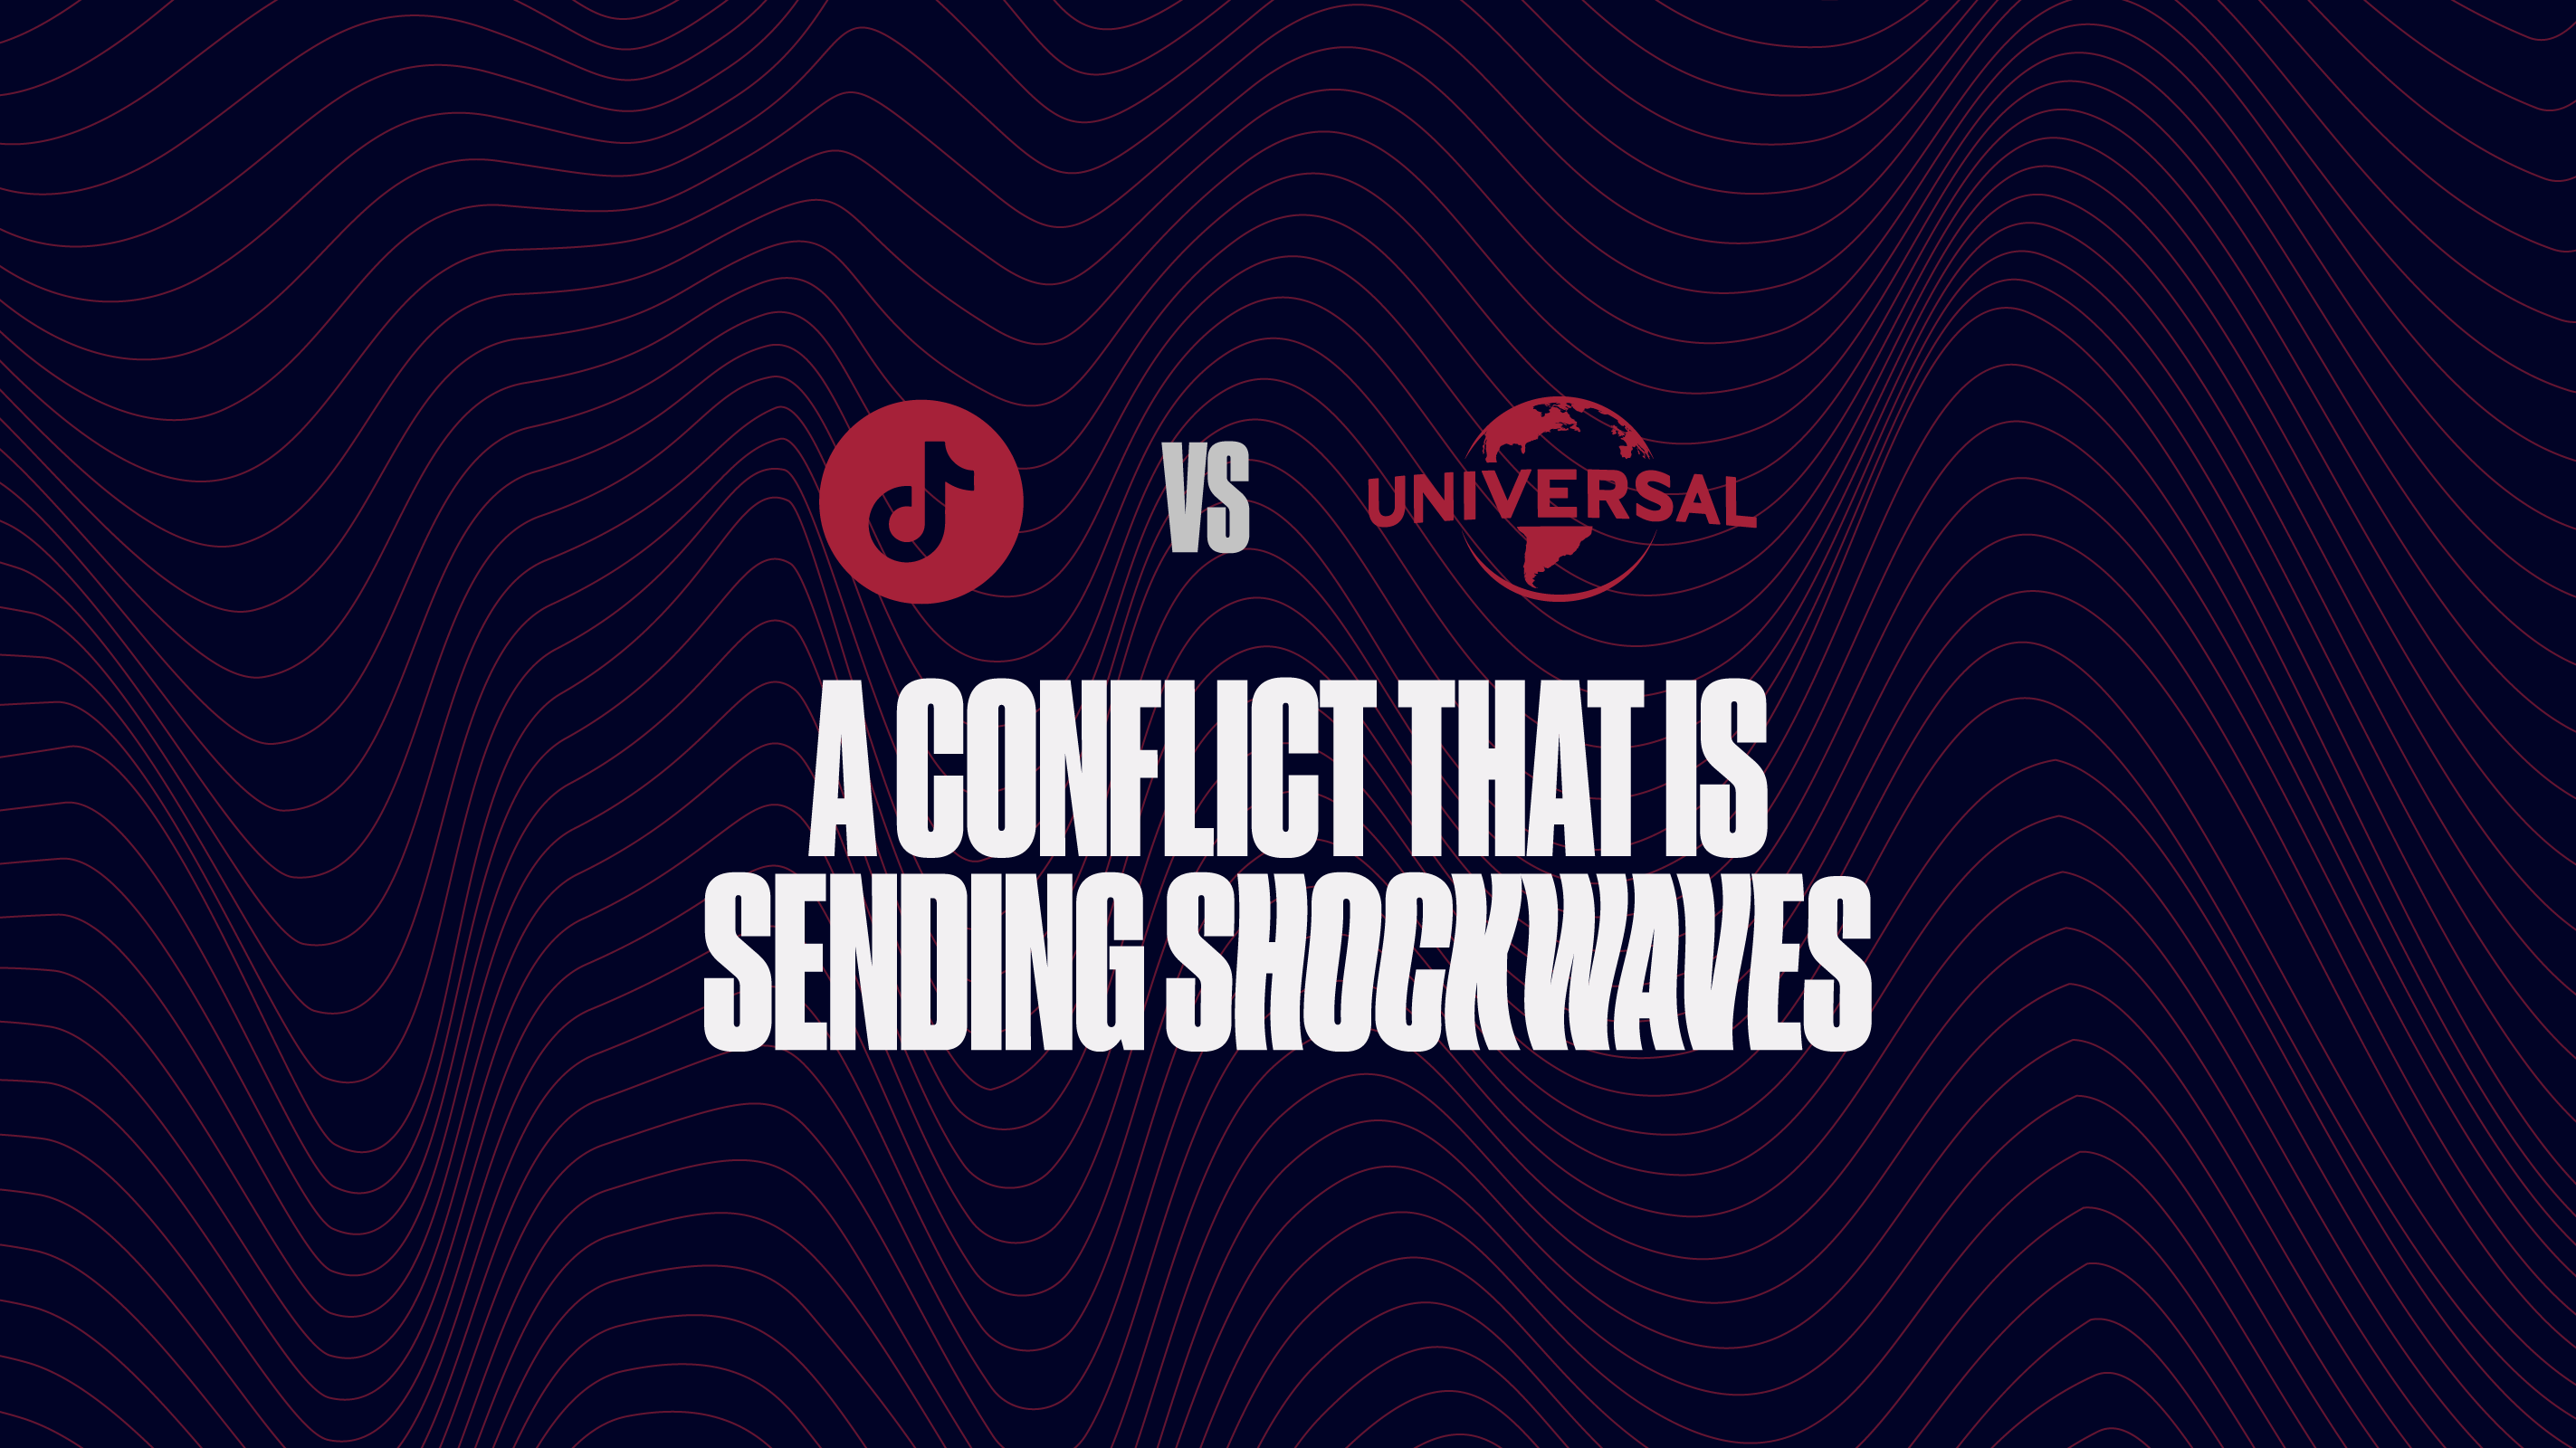 TikTok vs Universal Music Group